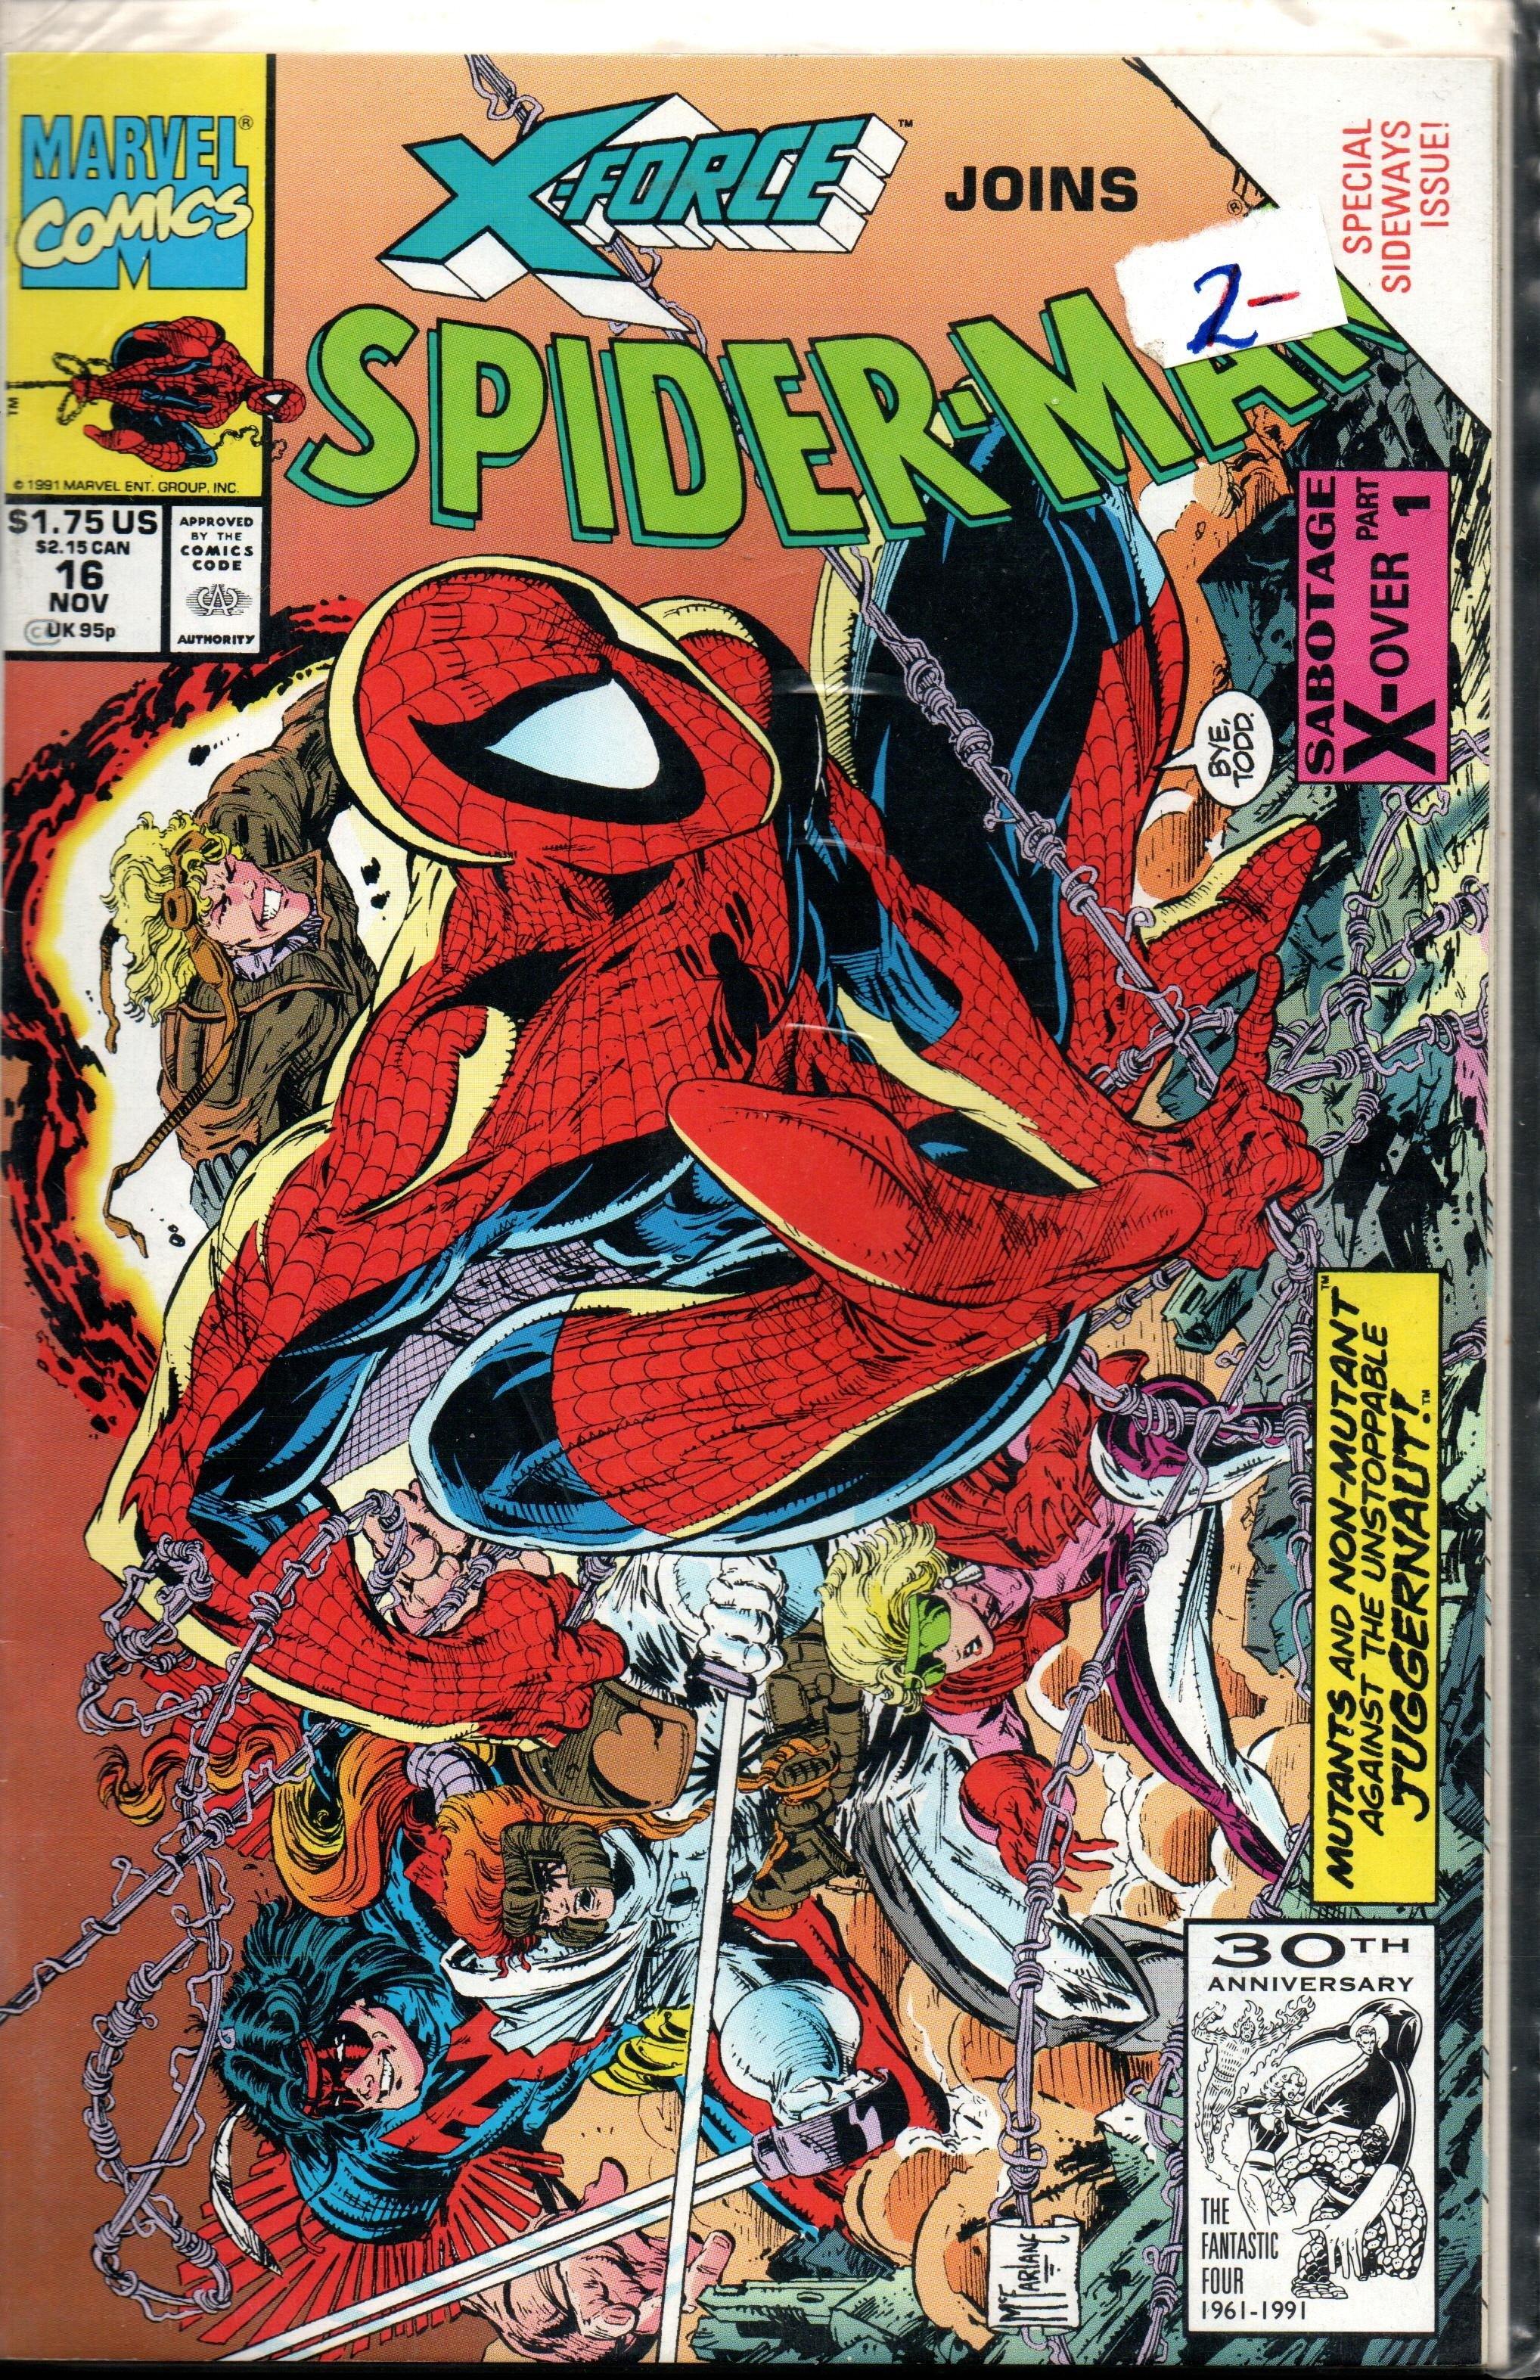 SPIDER-MAN #16 NOV 1991 SABOTAGE X-OVER PART 1 OF 2